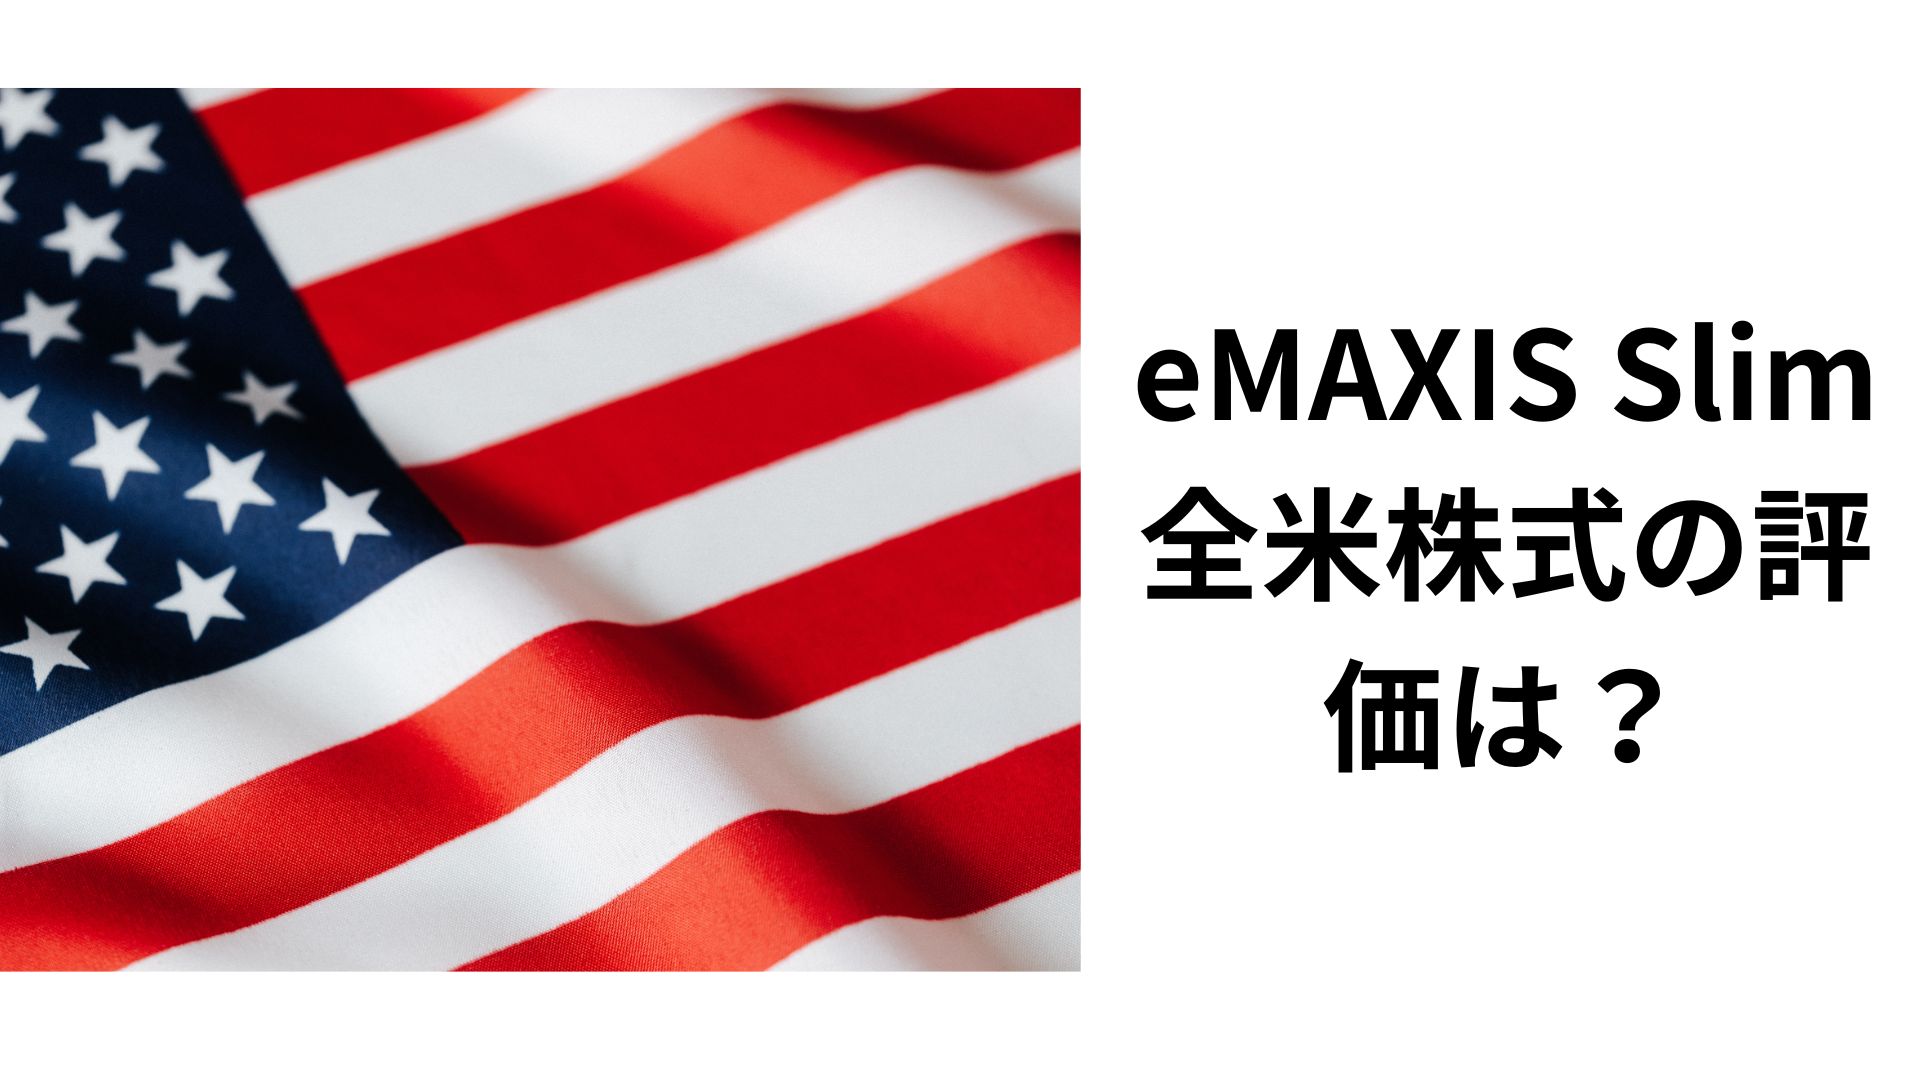 eMAXIS Slim 全米株式の評価は？